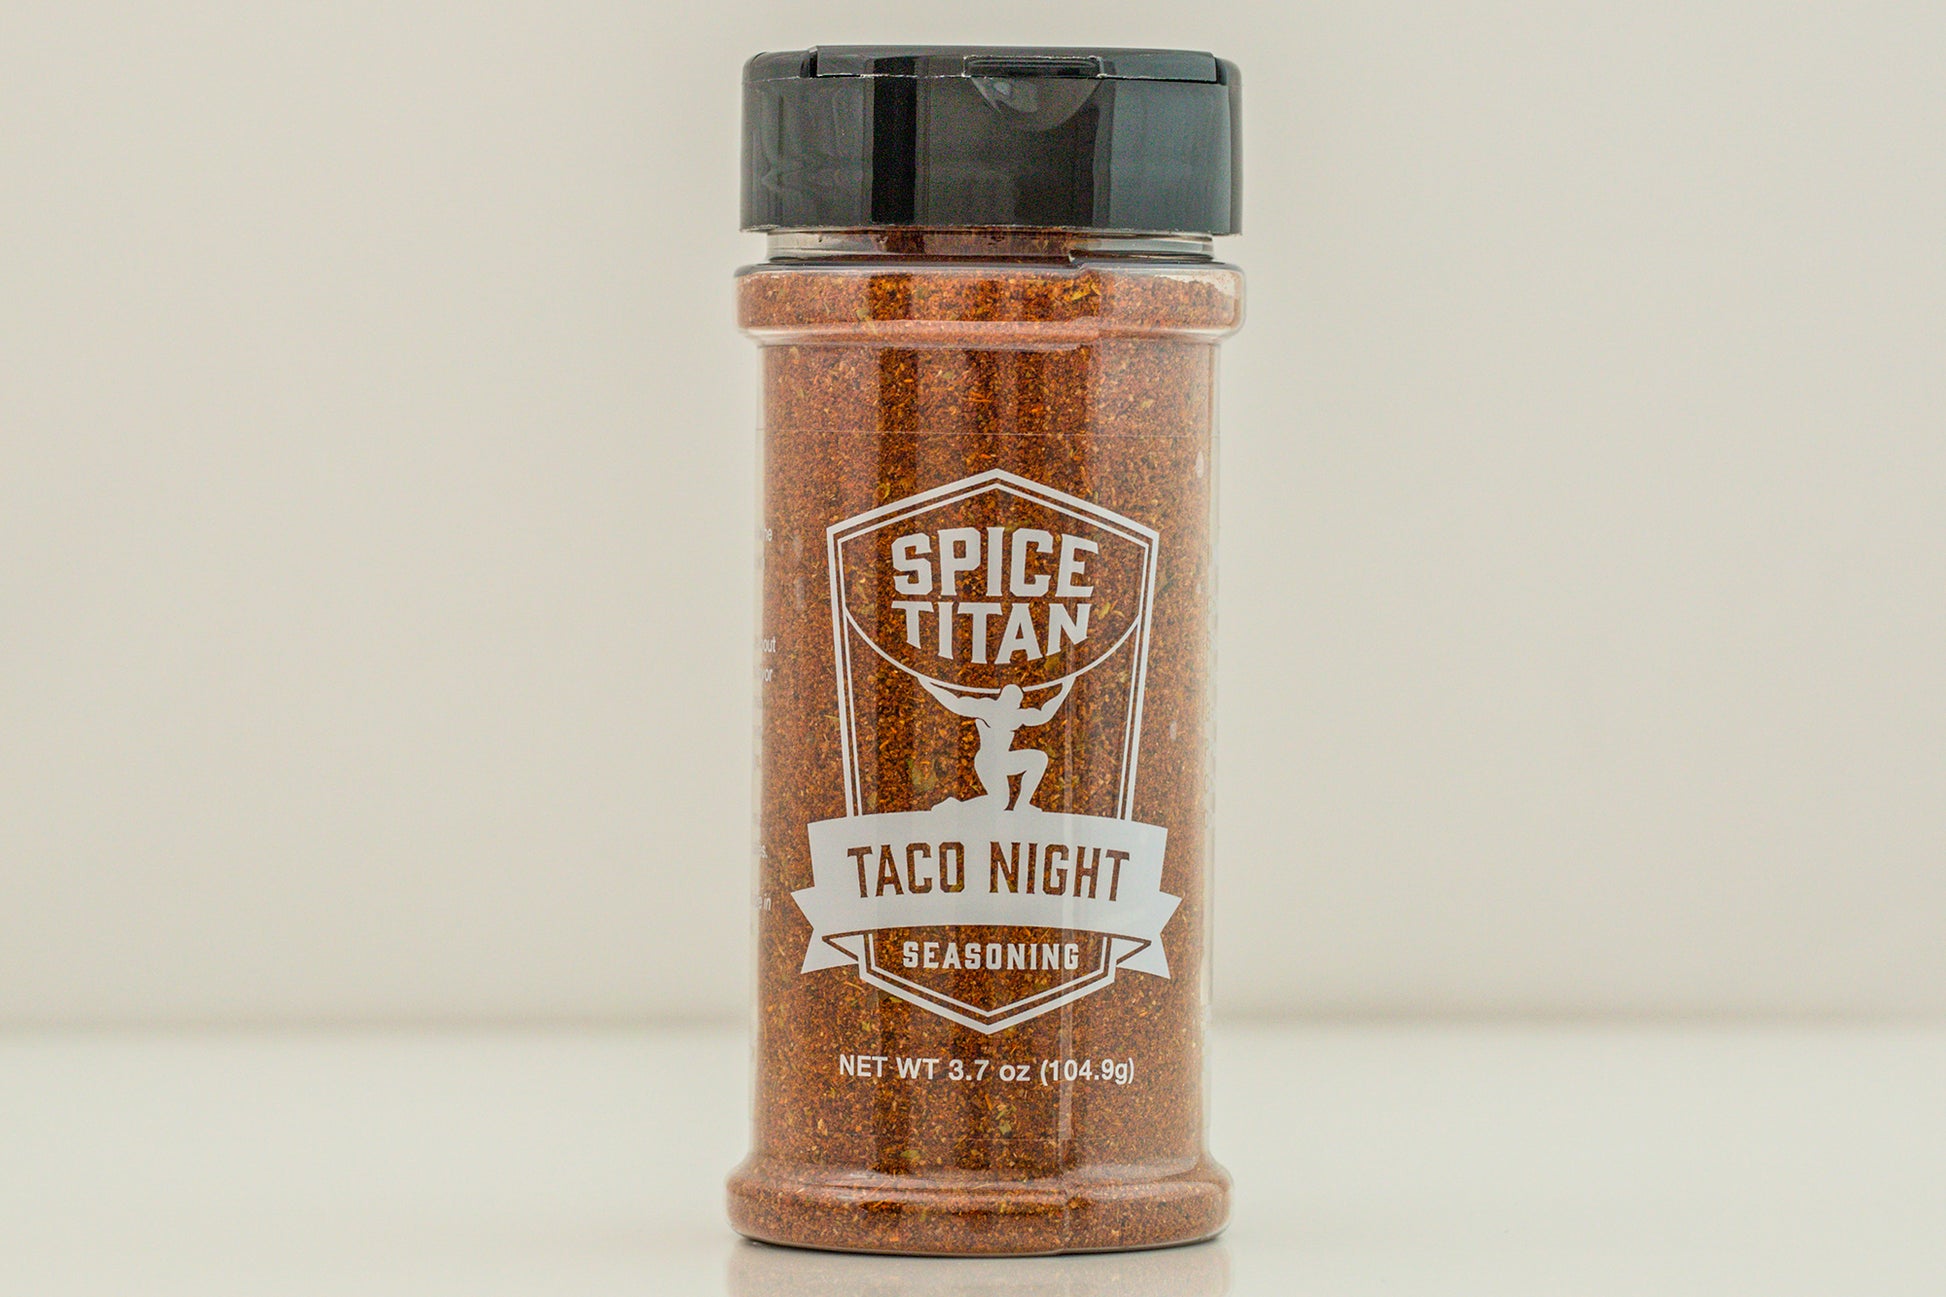 Taco Night Spicetitan.com